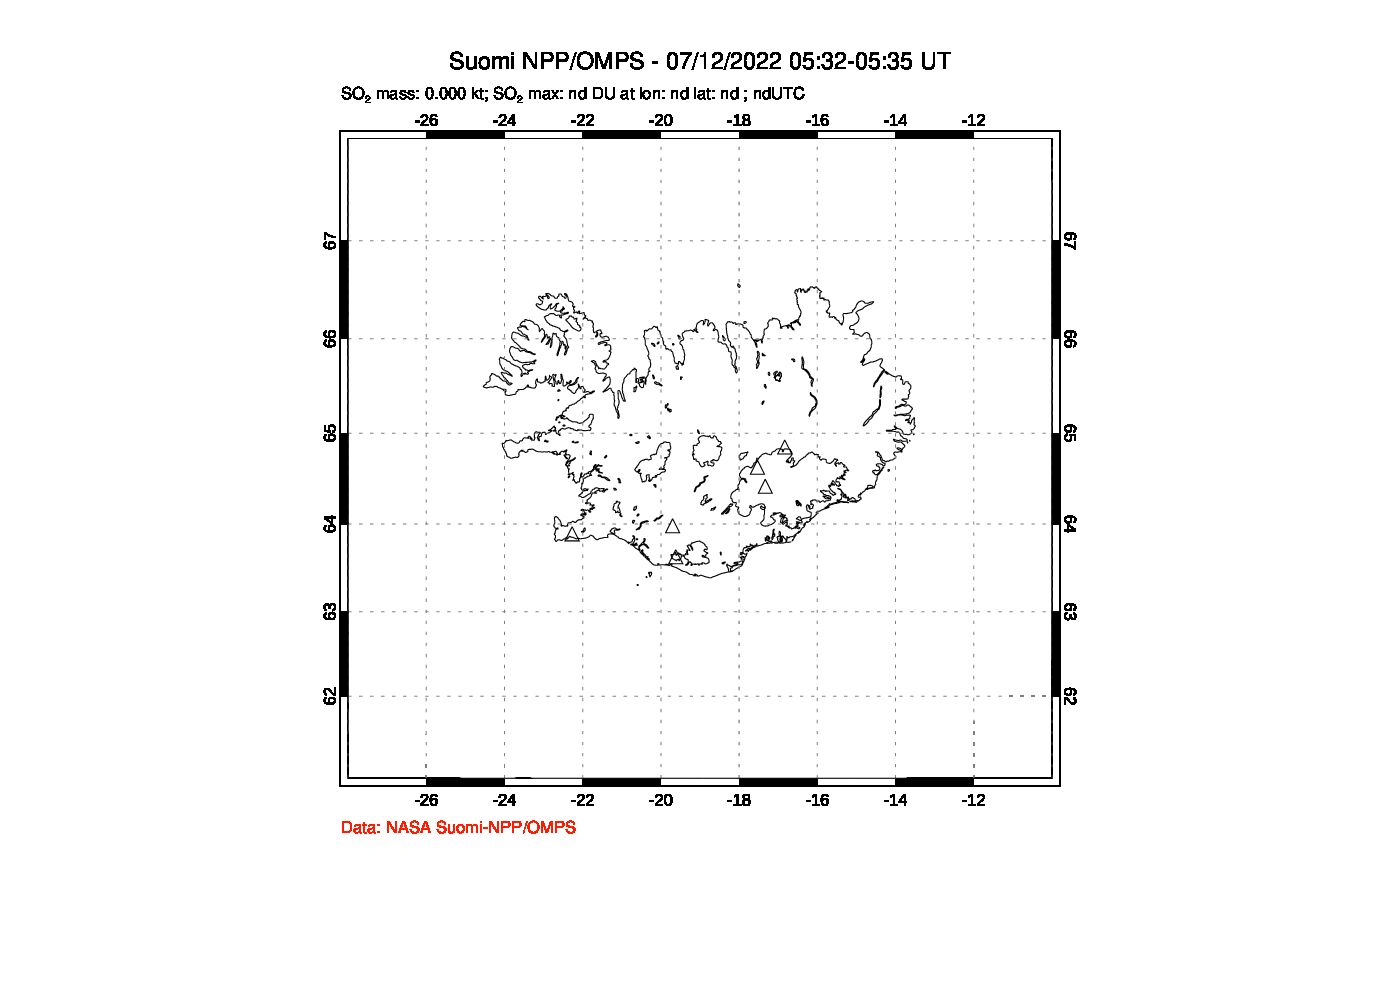 A sulfur dioxide image over Iceland on Jul 12, 2022.